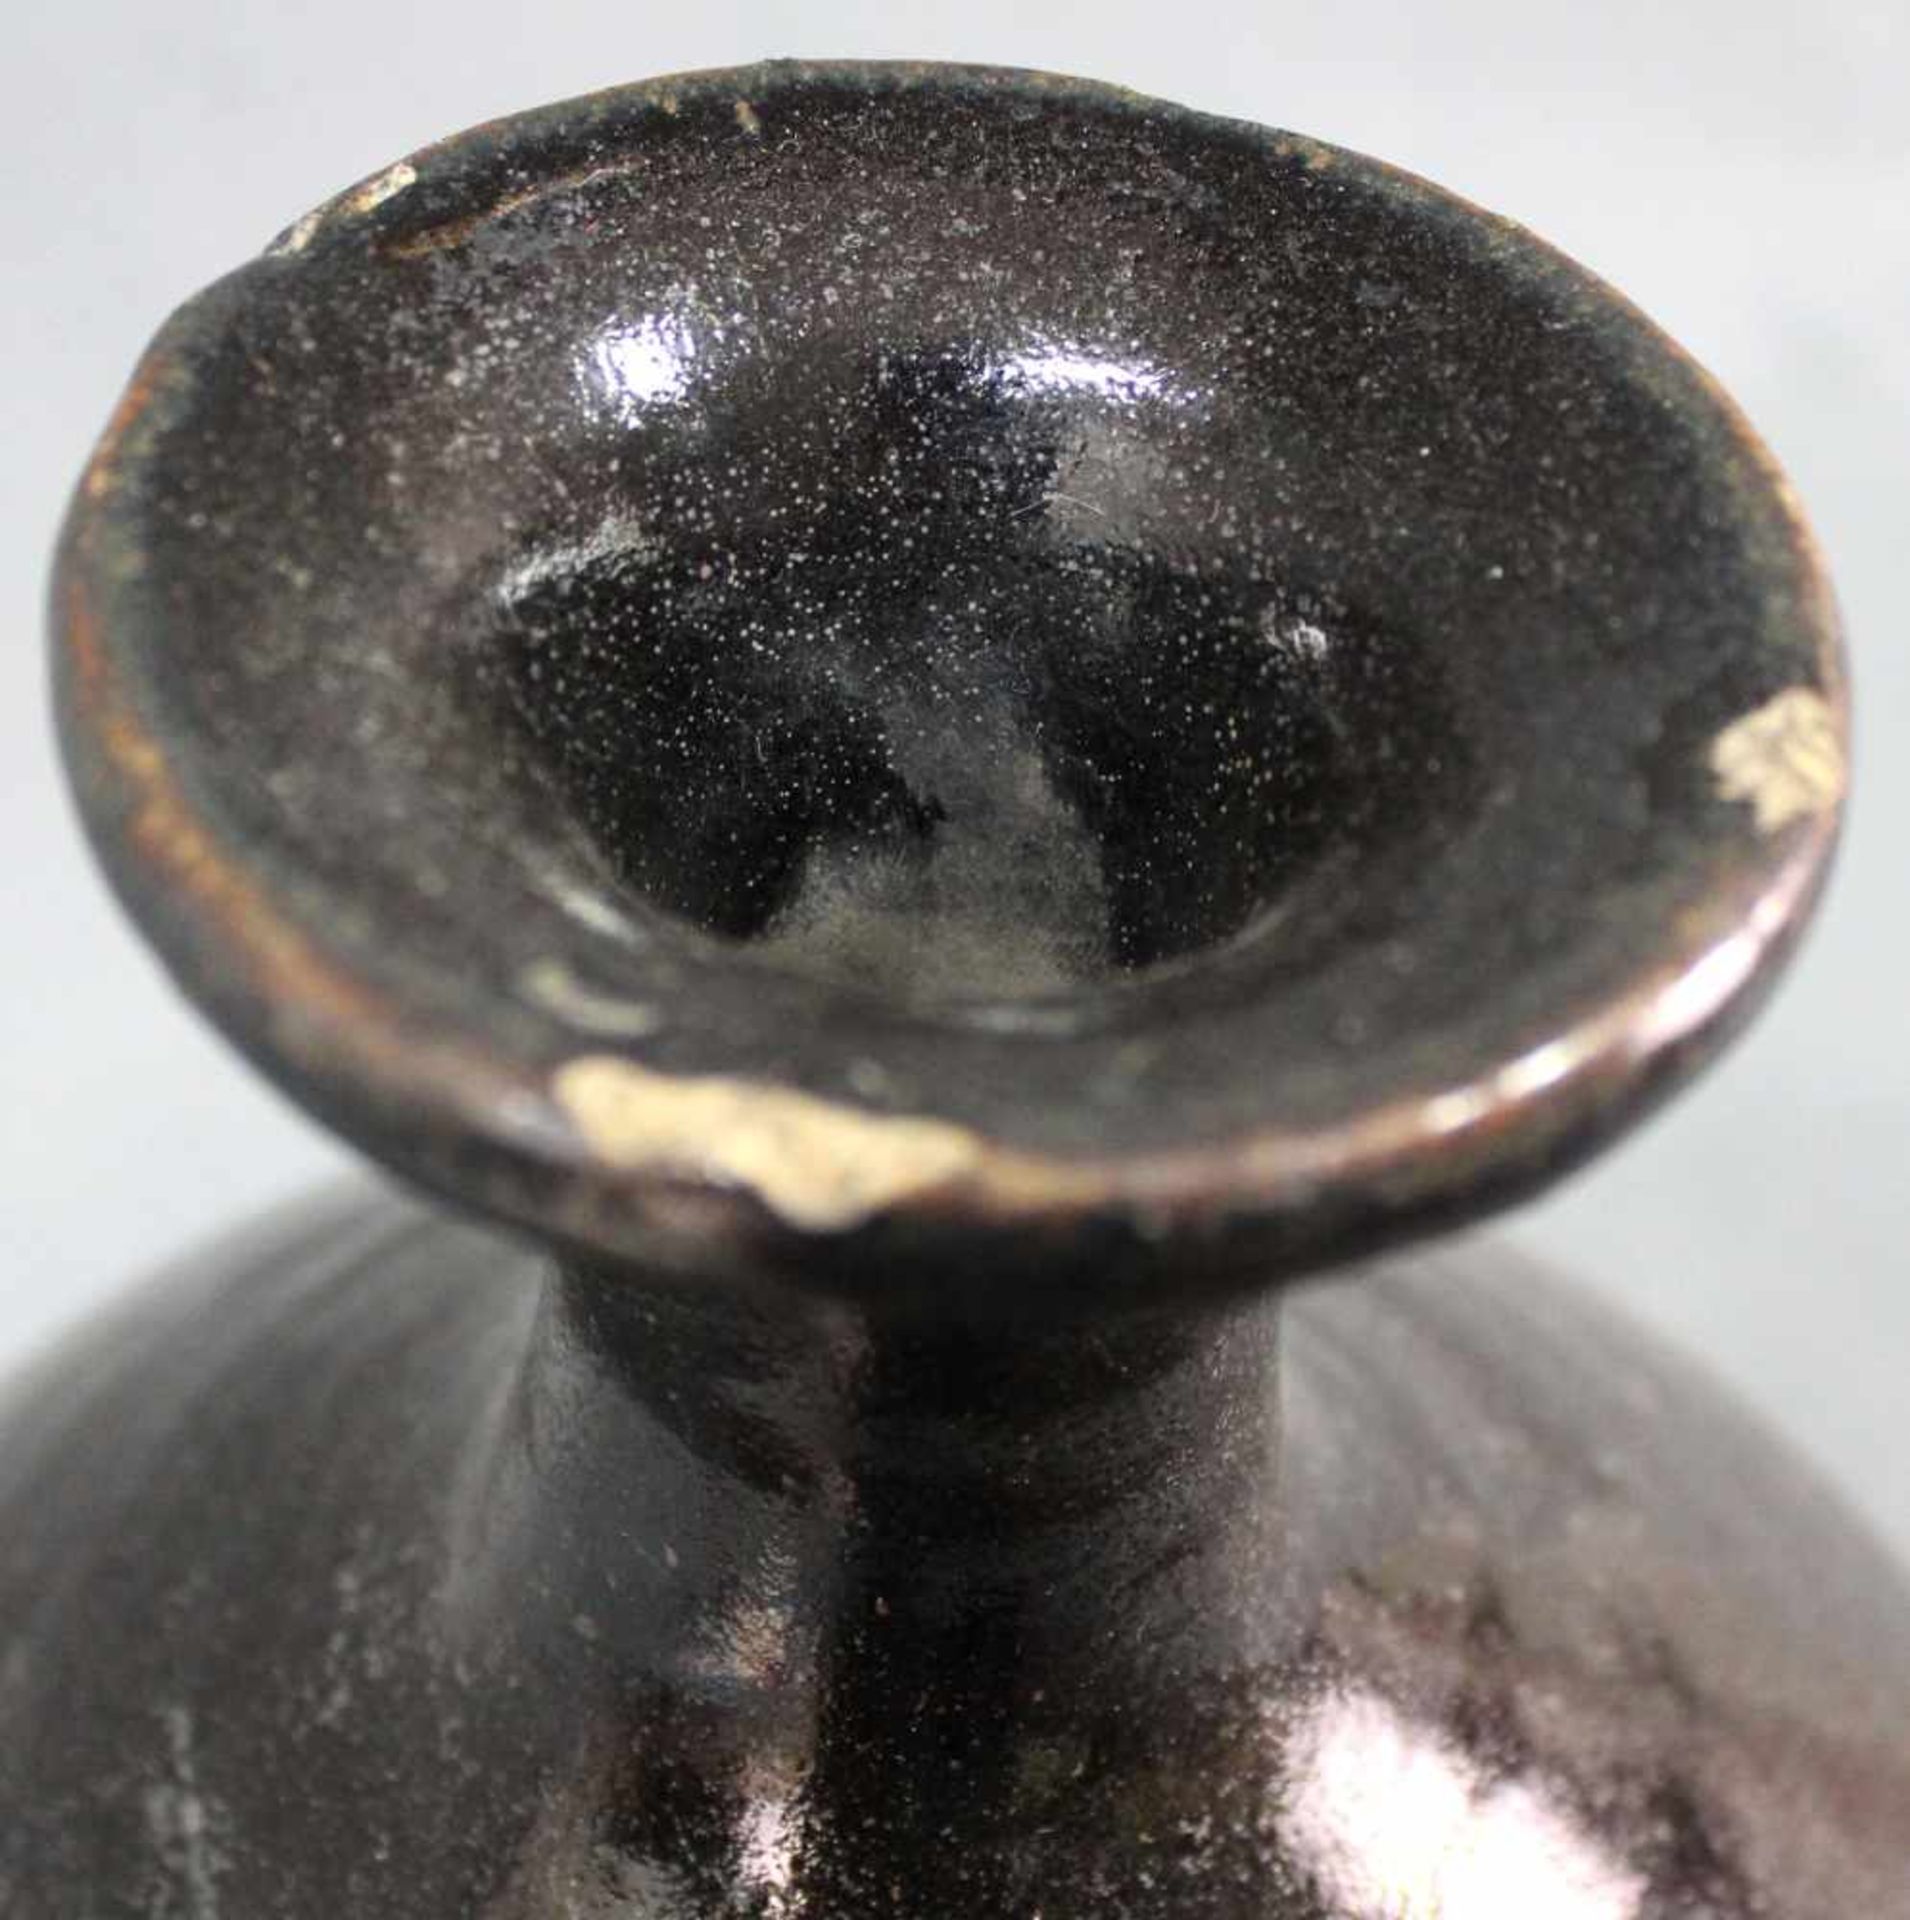 Bauchige Vase. Vorratsgefäß. Steingut. Schwarze Glasur. Wohl Zentralasien, antik.34 cm hoch.Vase. - Image 5 of 7